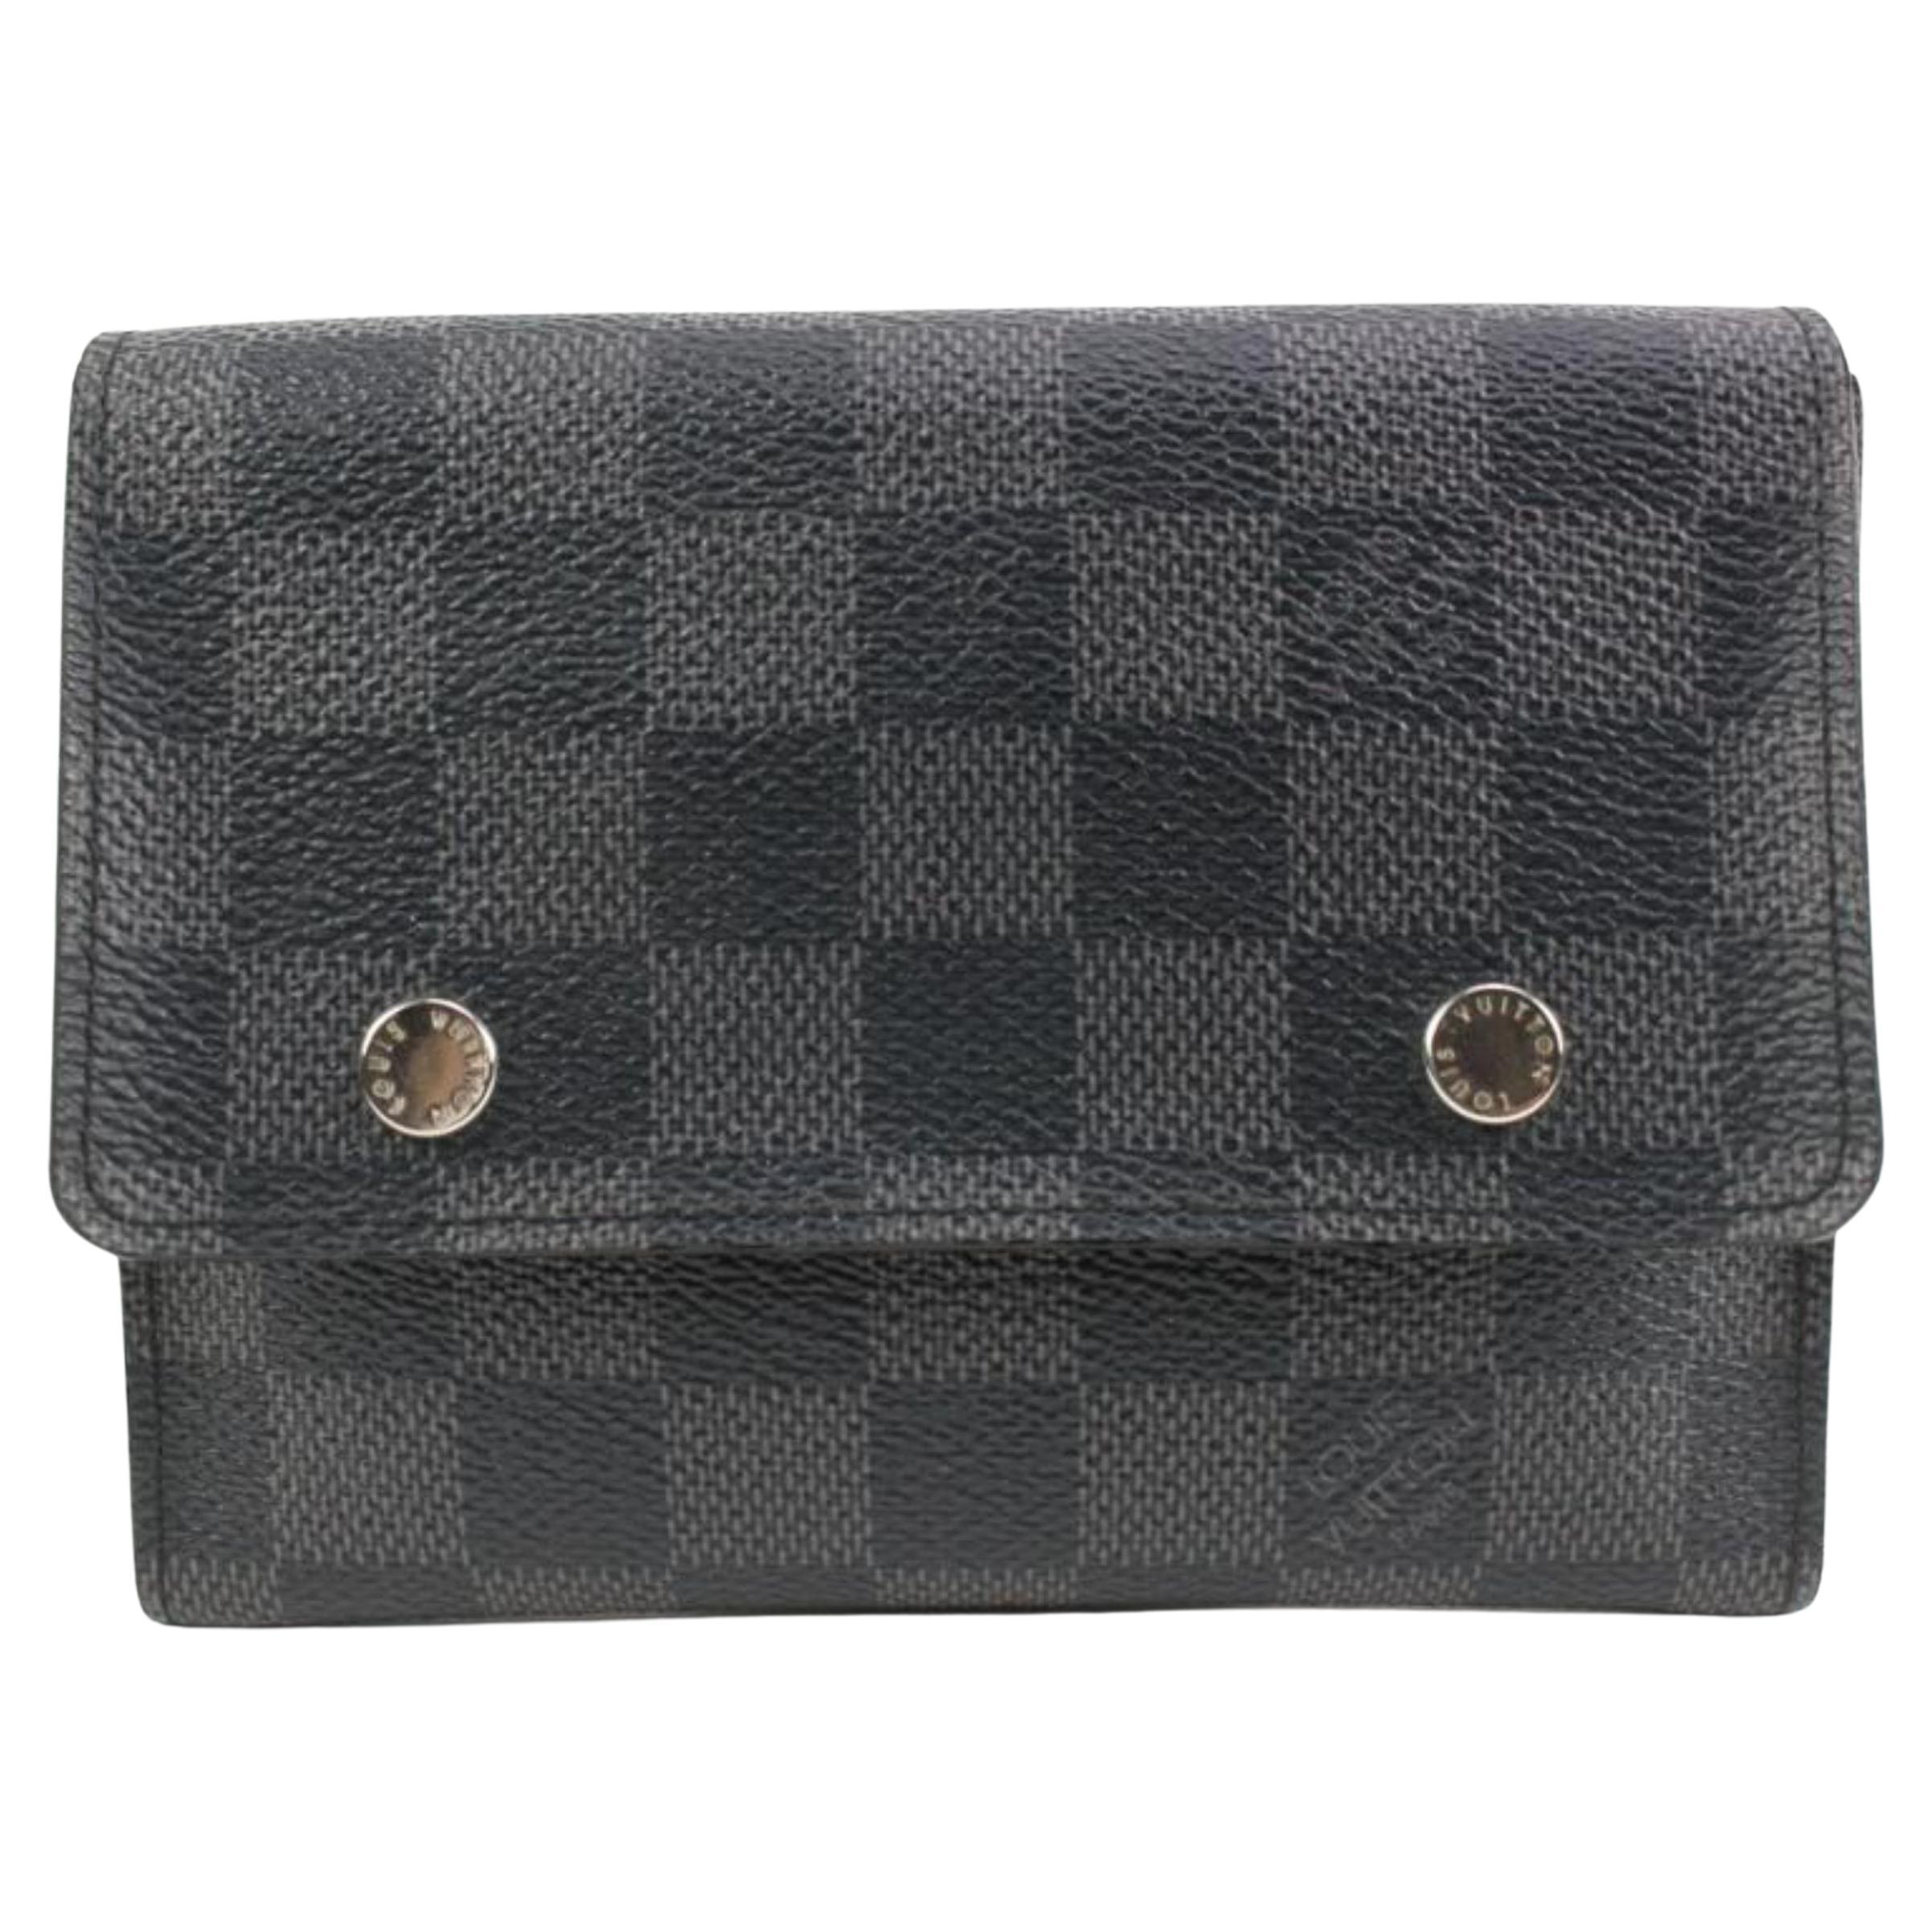 Louis Vuitton Black Damier Graphite Compact Snap Wallet 2lk318s For Sale